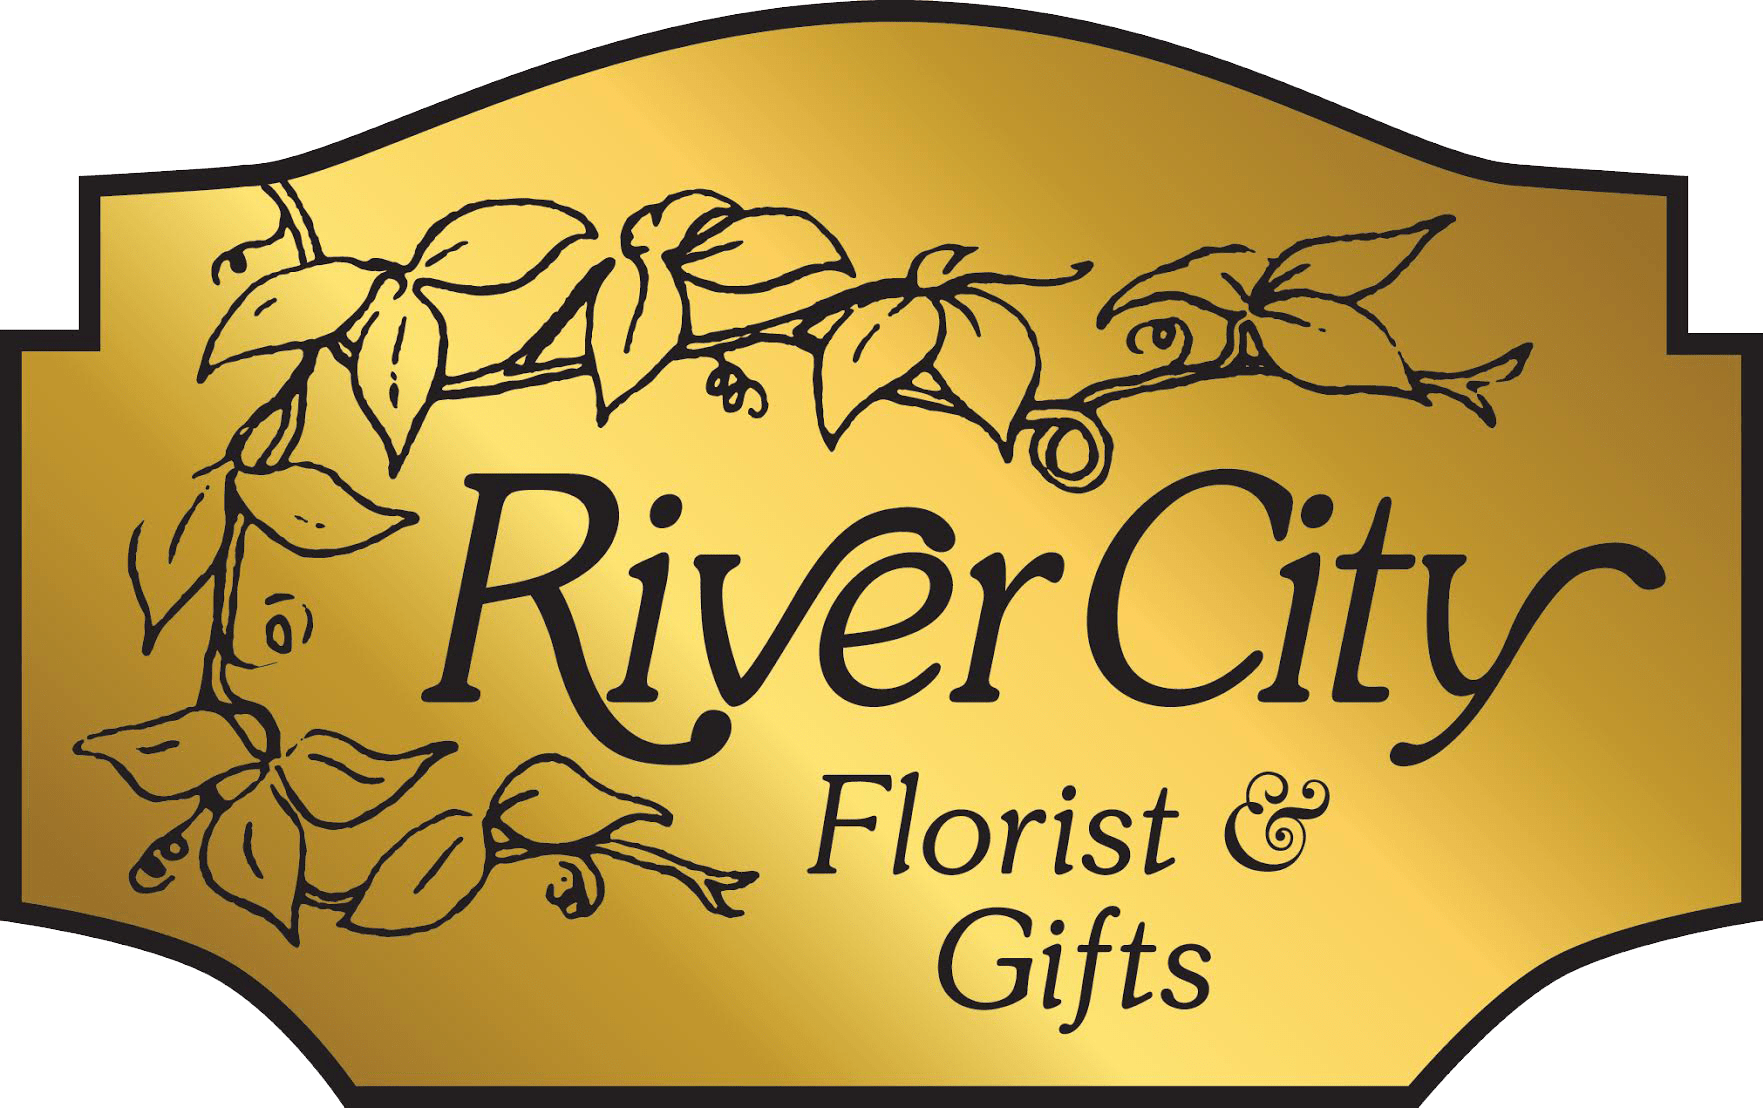 River City Florist